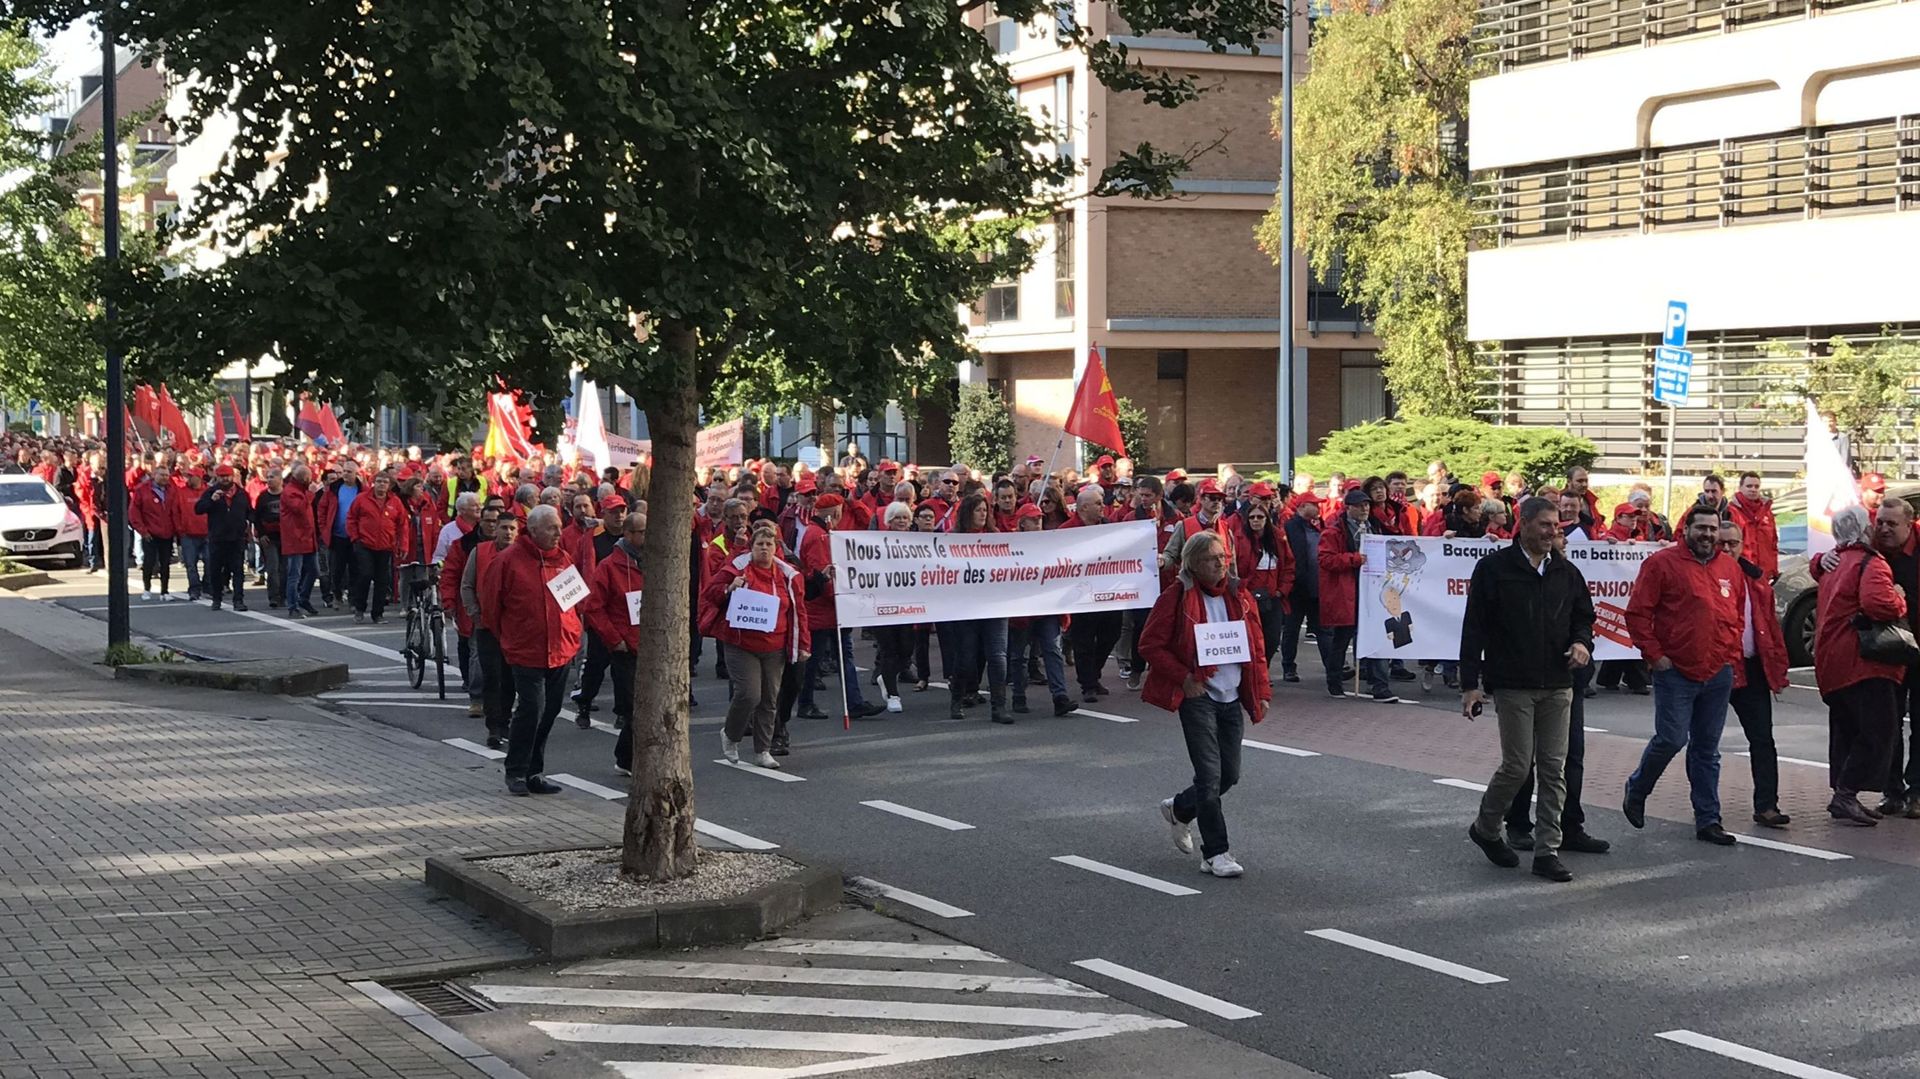 La CGSP manifeste ce mercredi à Namur "pour défendre les services publics"